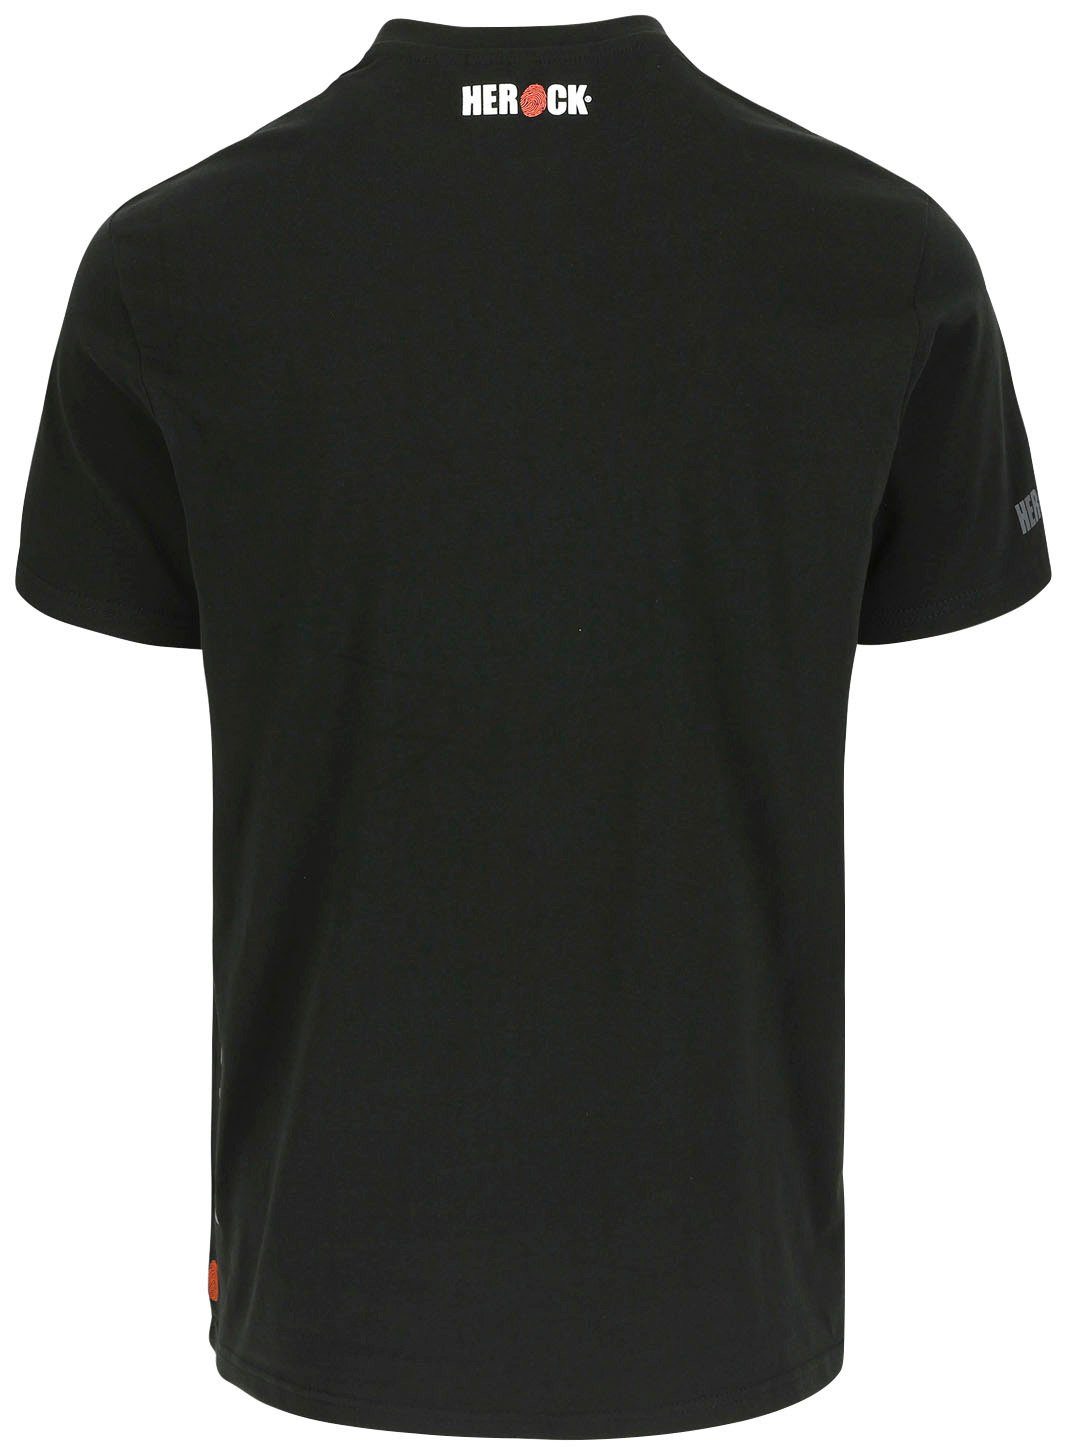 Herock T-Shirt Callius T-Shirt kurze schwarz Herock®-Aufdruck, Ärmel Ärmel, Rundhalsausschnitt, Rippstrickkragen kurze